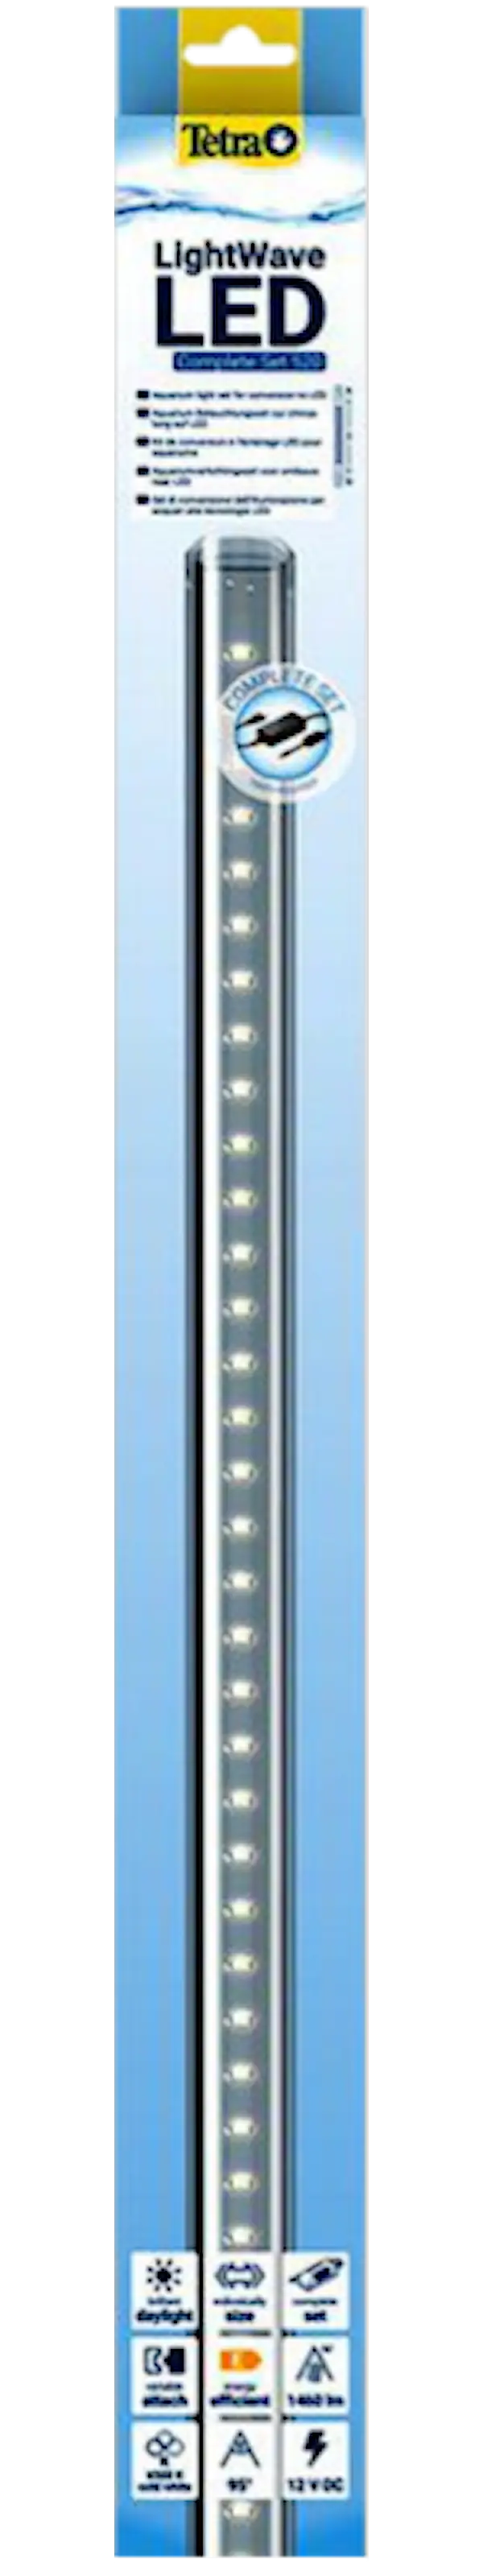 LightWave LED Single Light, 520 - 600 mm